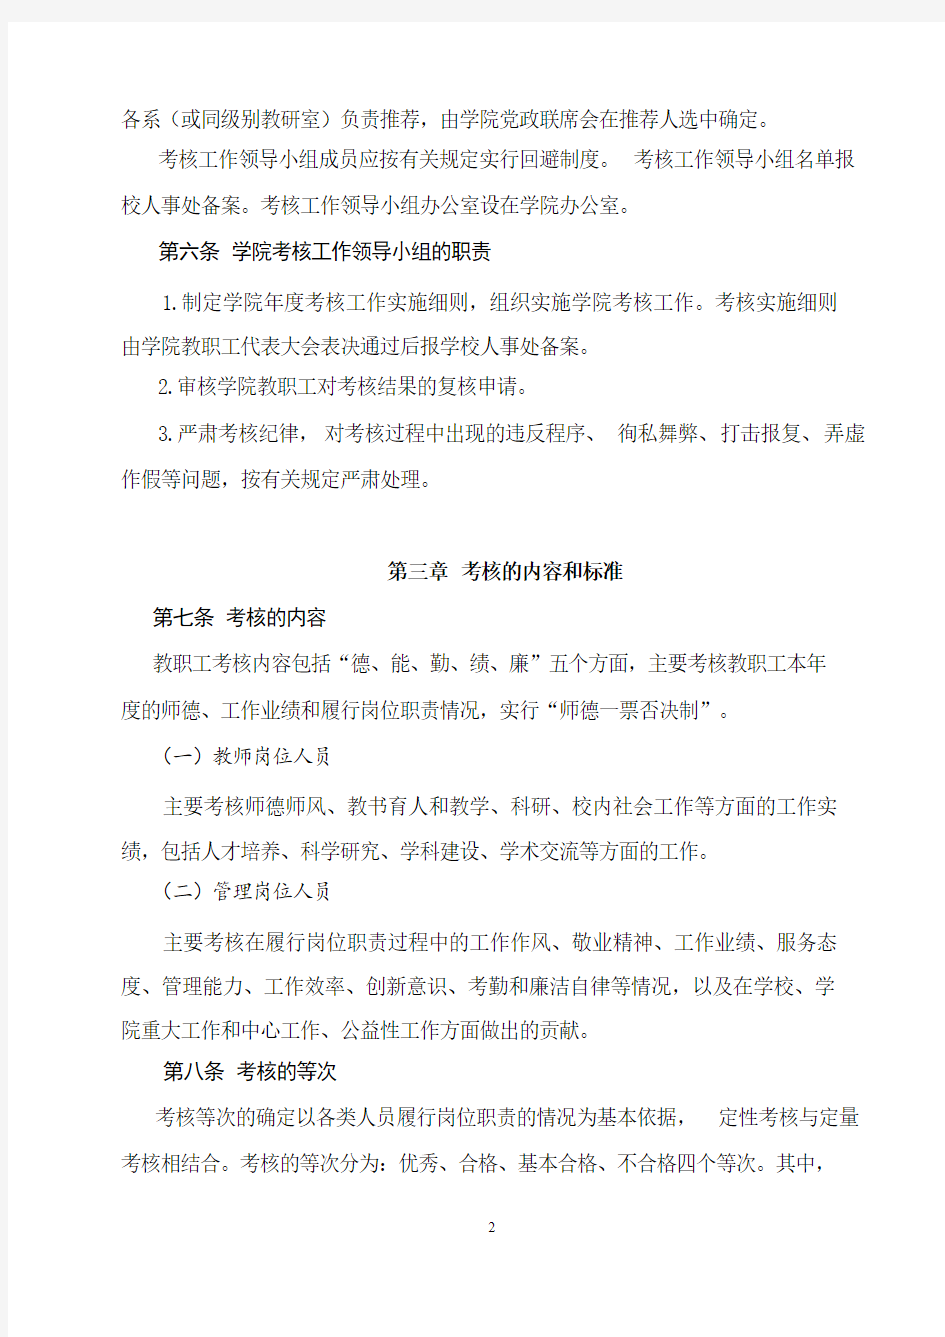 北京工商大学经济学院2017教职工考核实施细则